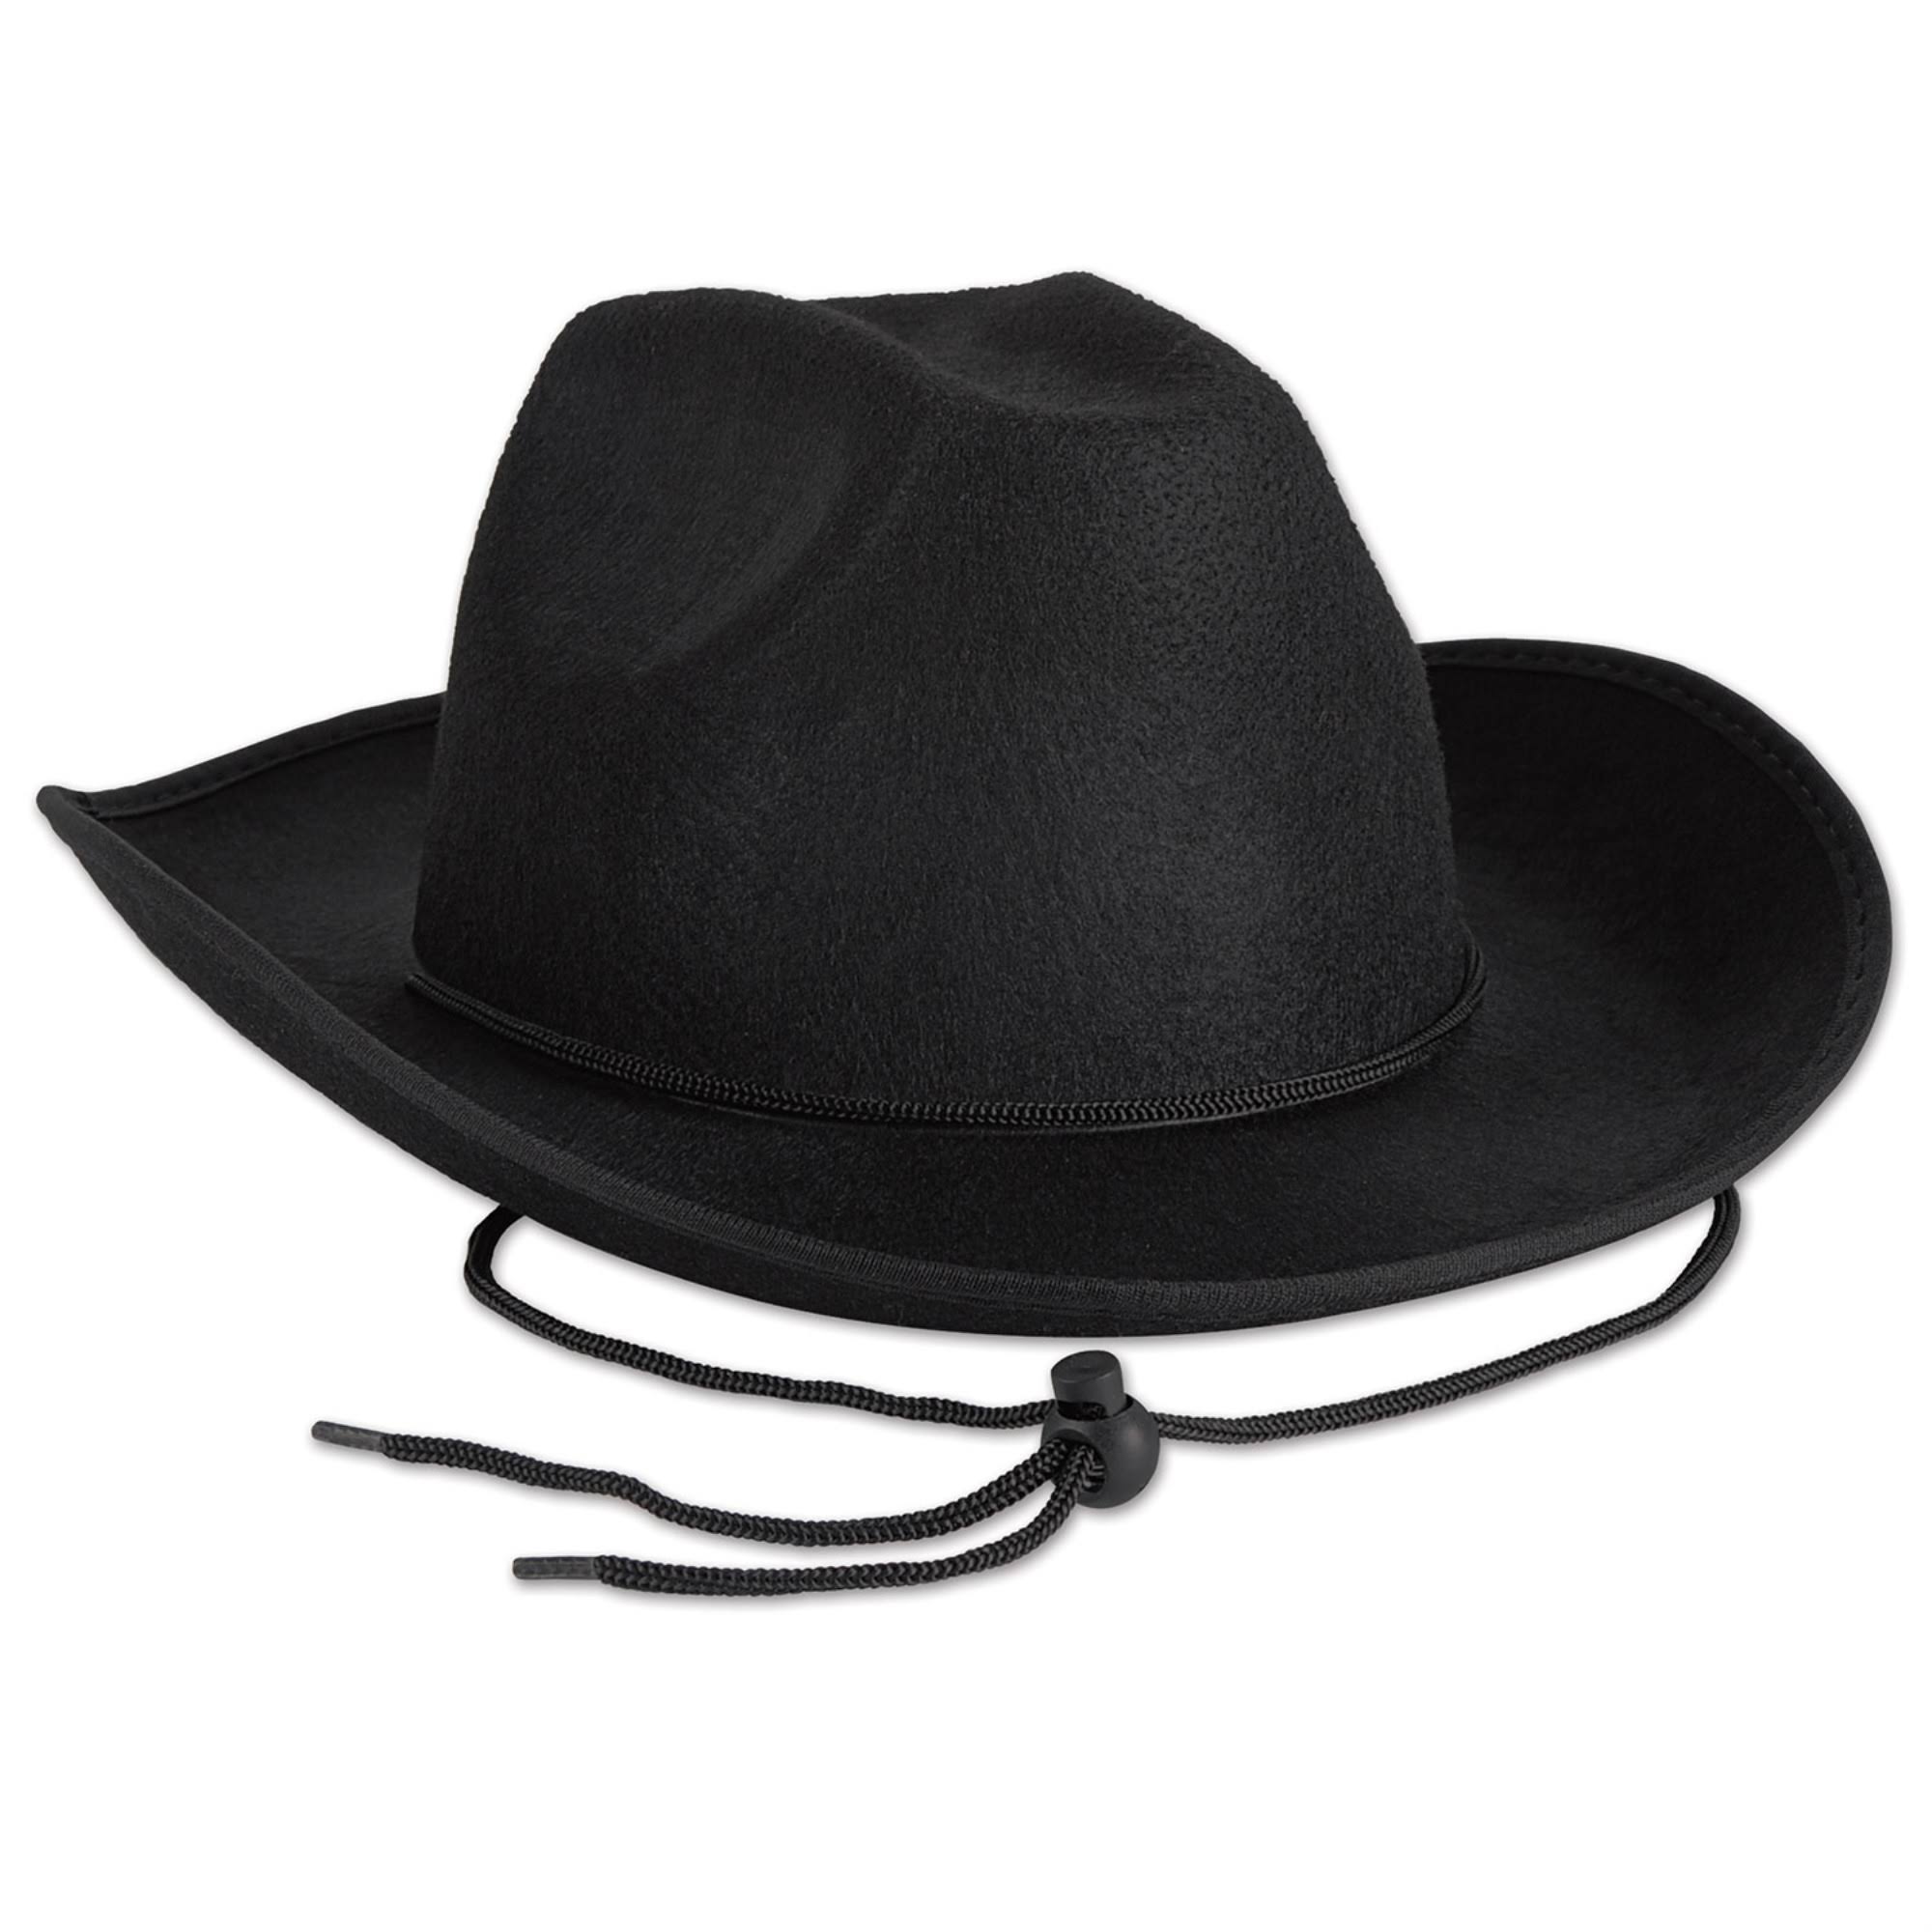 Beistle Black Felt Cowboy Hat